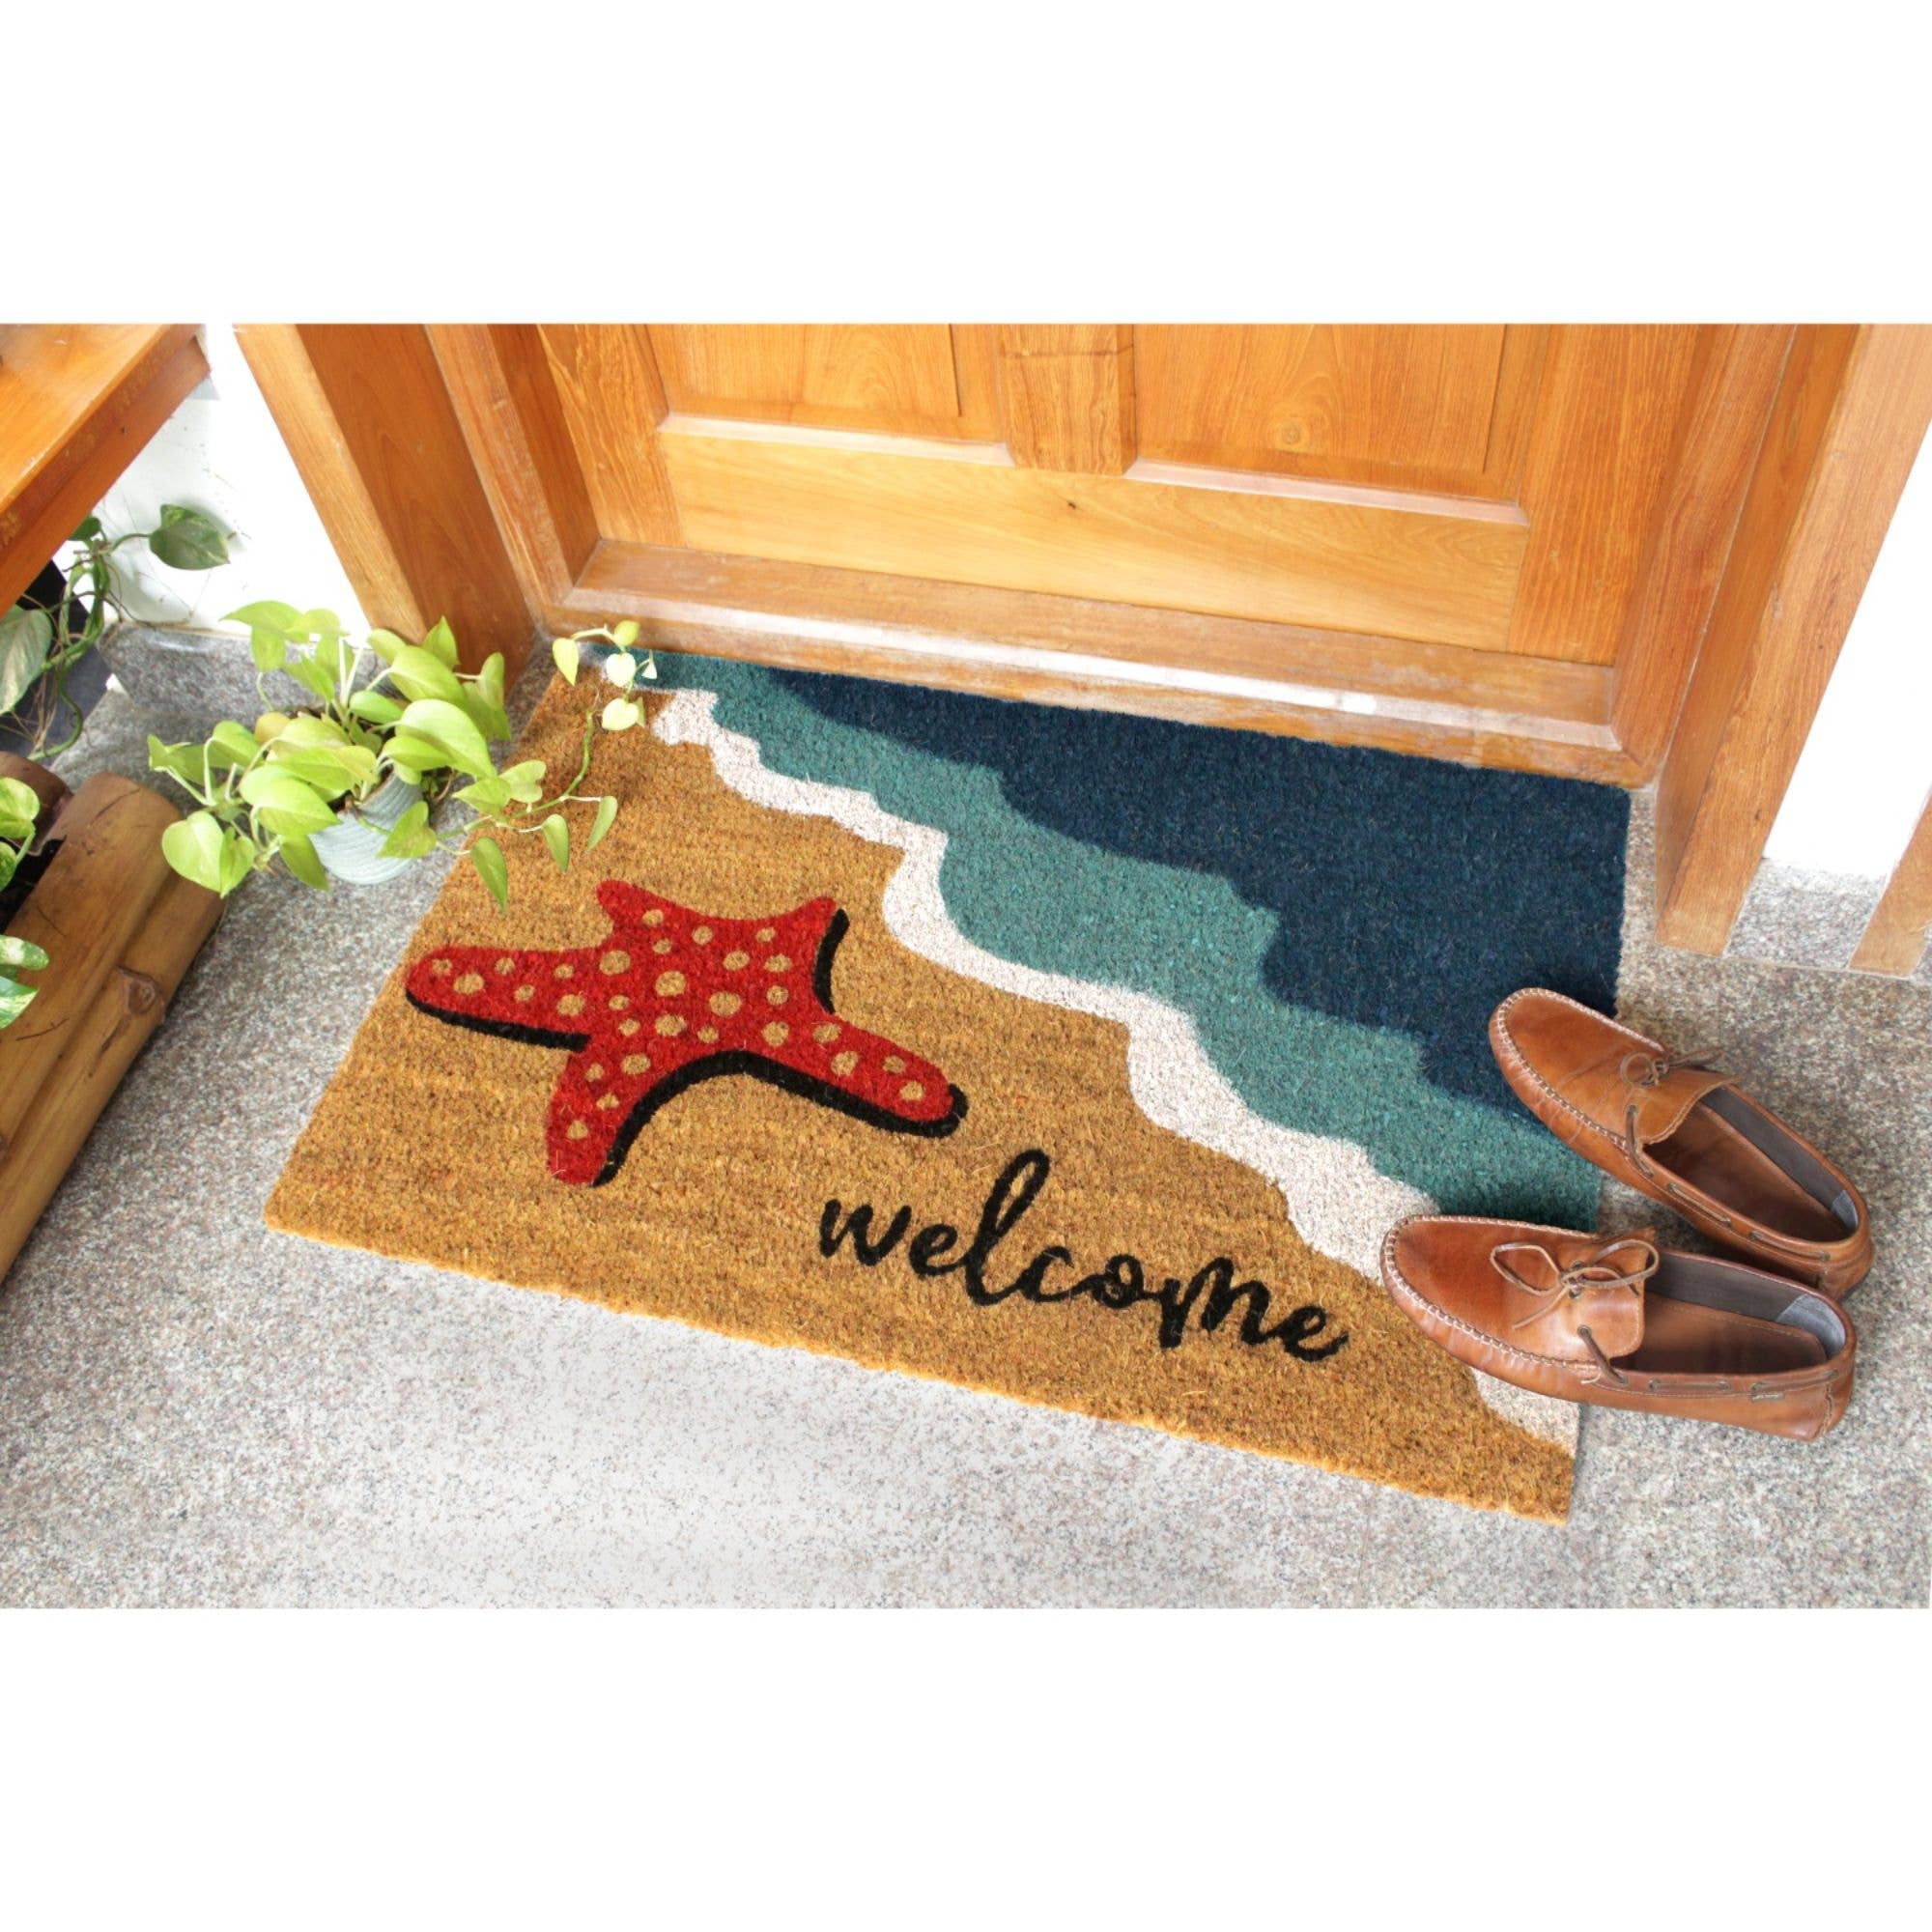 Doormat - Multi Tufted Starfish Welcome Doormat, 18" x 30" Rug